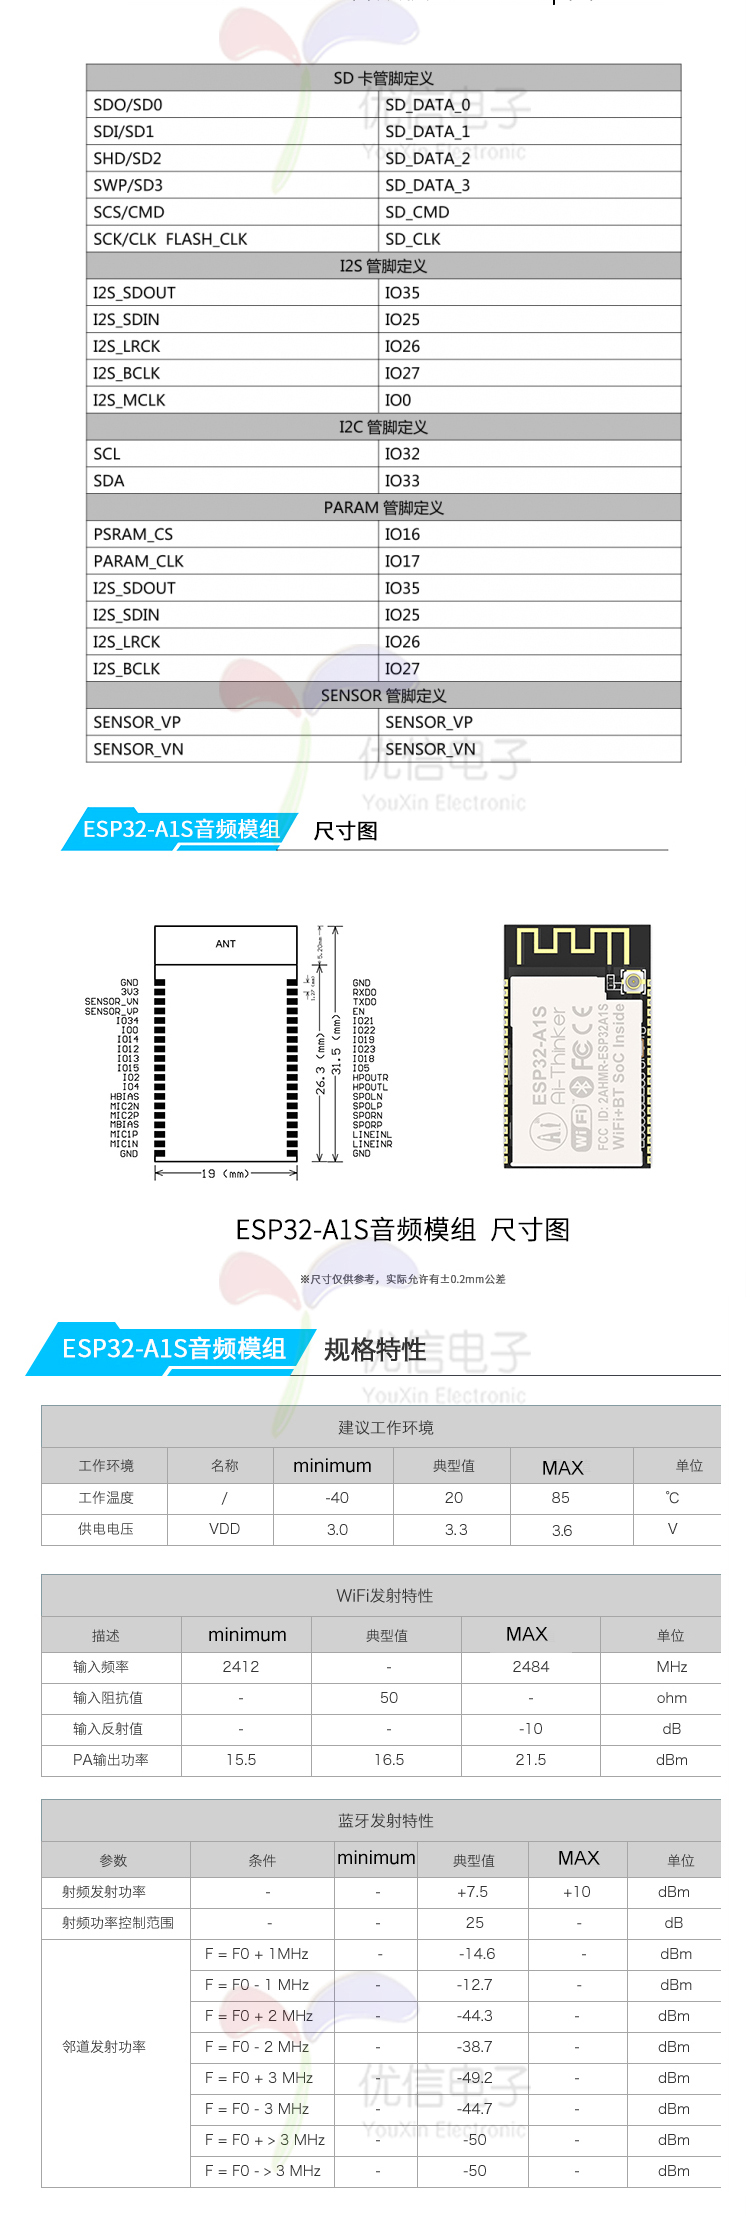 ESP32-A1S模块 WiFi+蓝牙/ESP32串口转WiFi模组/音频/智能家居示例图3